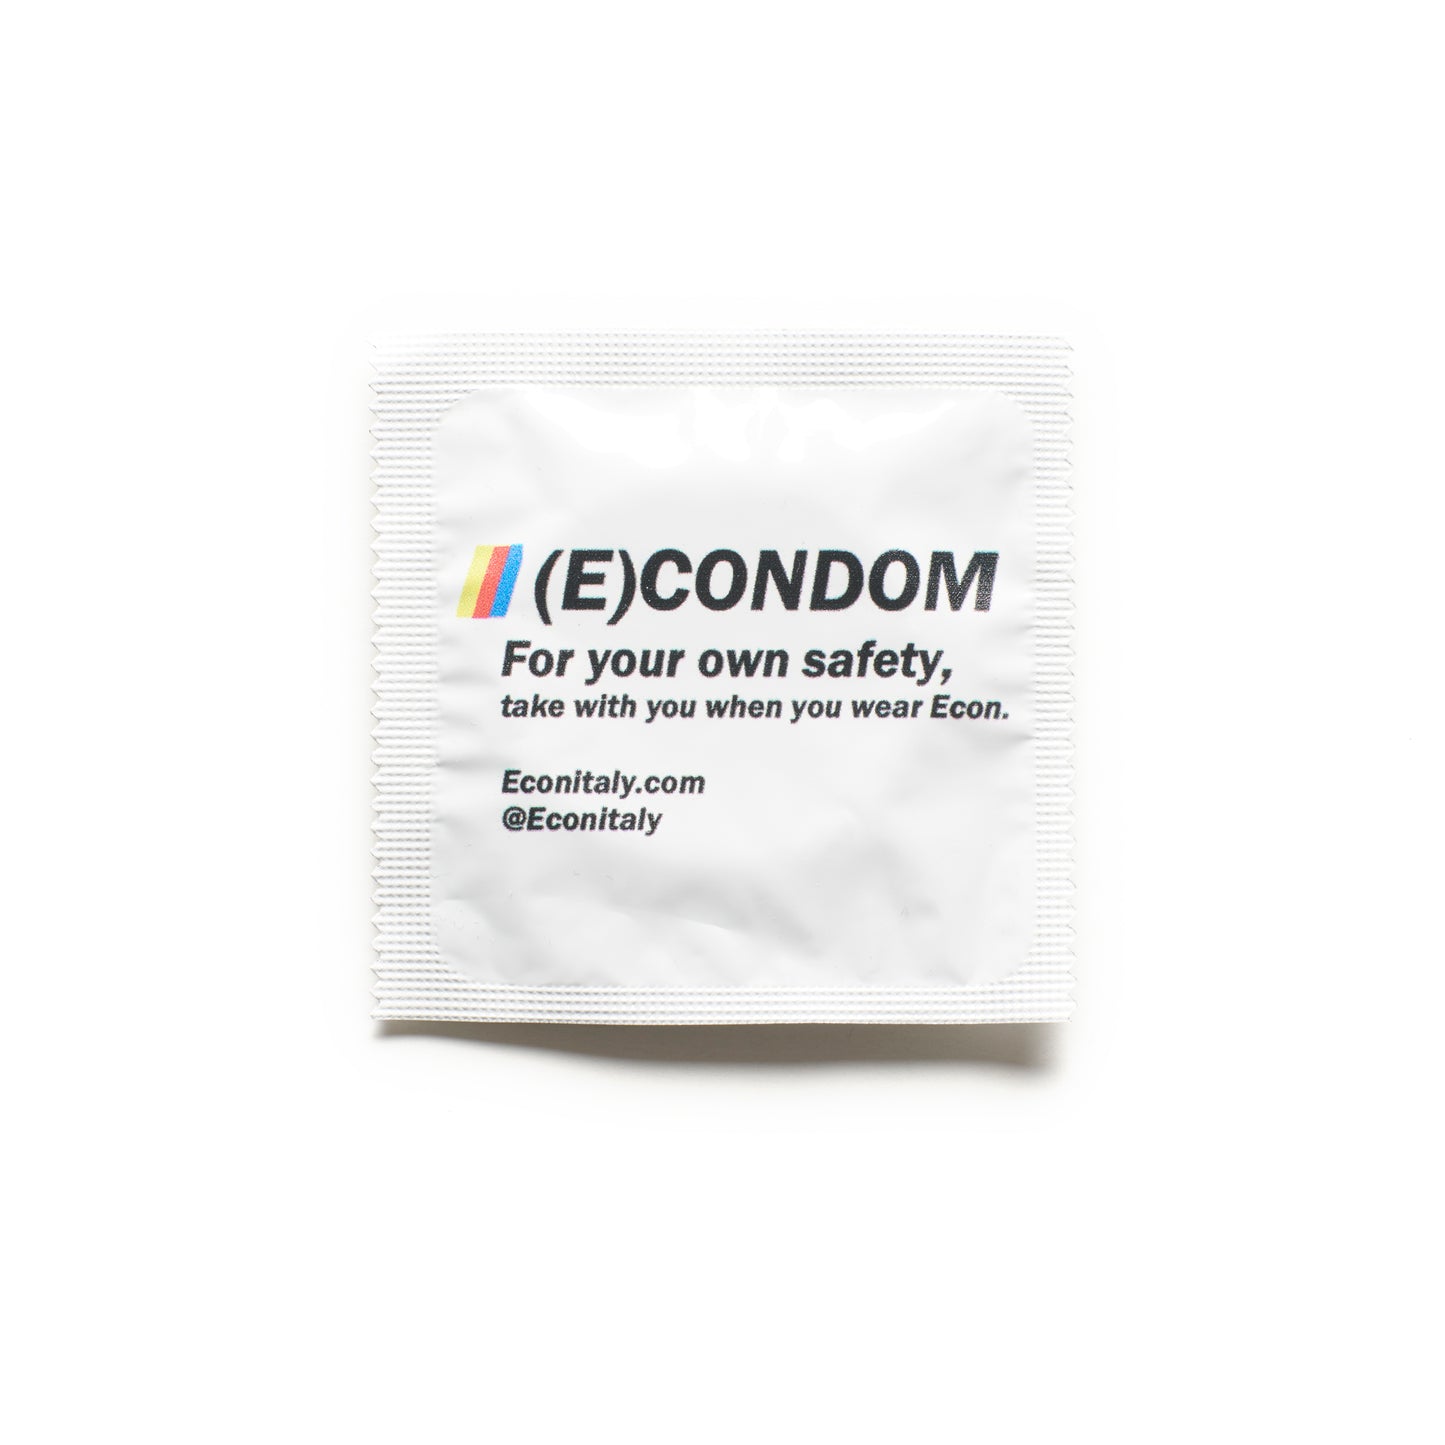 The E(condom)